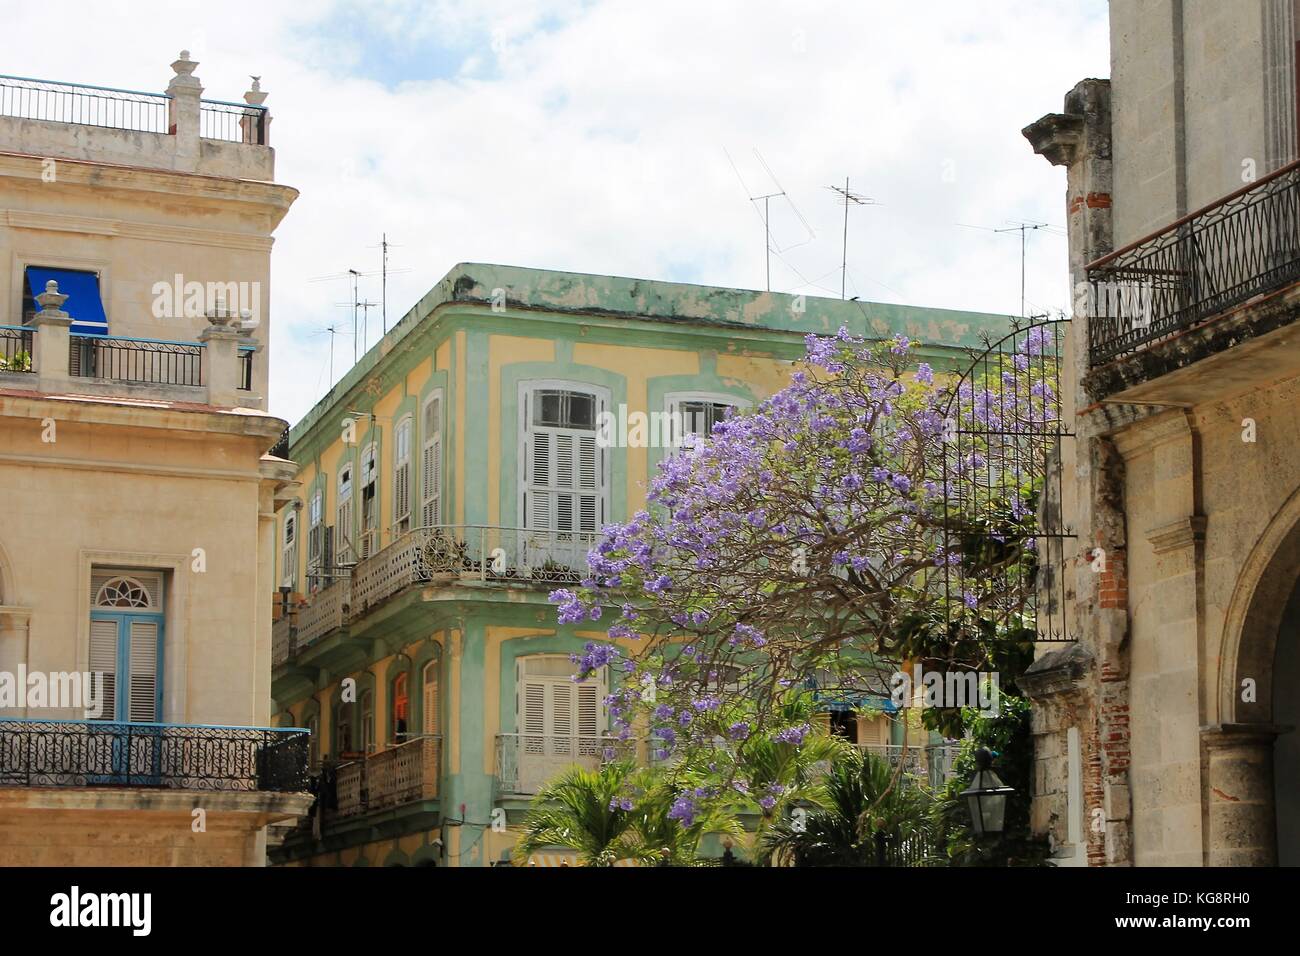 Vecchio stile neo-classico e stile spagnolo in edifici in piazza Vecchia, Havana, Cuba. Sono inoltre visibili le palme e la fioritura degli alberi tropicali. Foto Stock